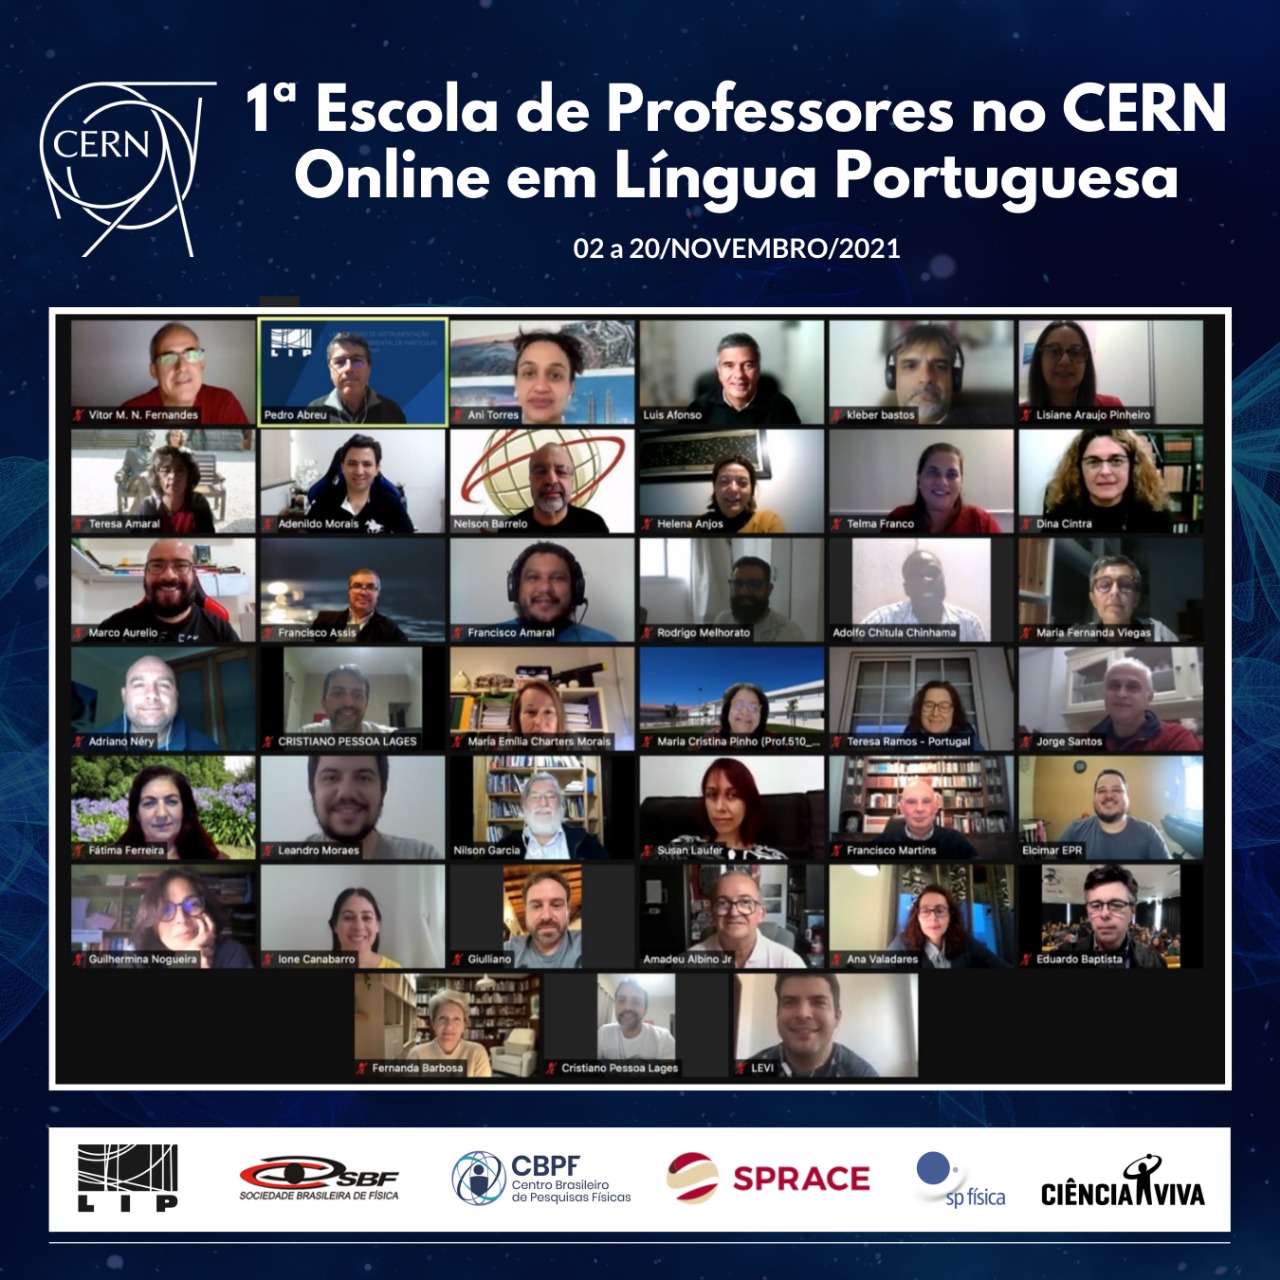 1ª Escola de Professores no CERN Online em Língua Portuguesa